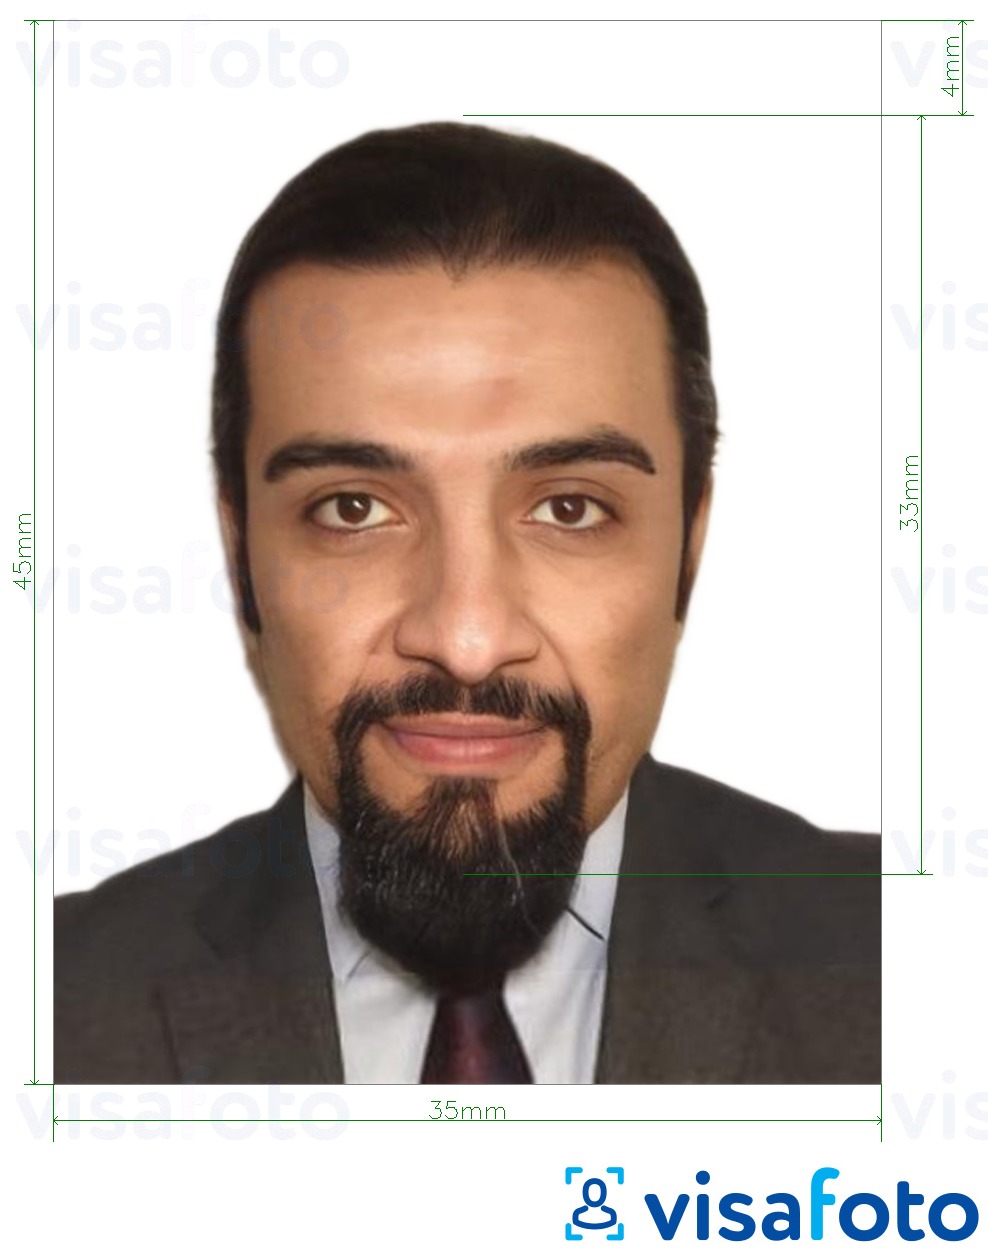 Przykład zdjęcia dla Paszport jordański 3,5x4,5 cm (35x45 mm) z podaniem dokładnego rozmiaru.